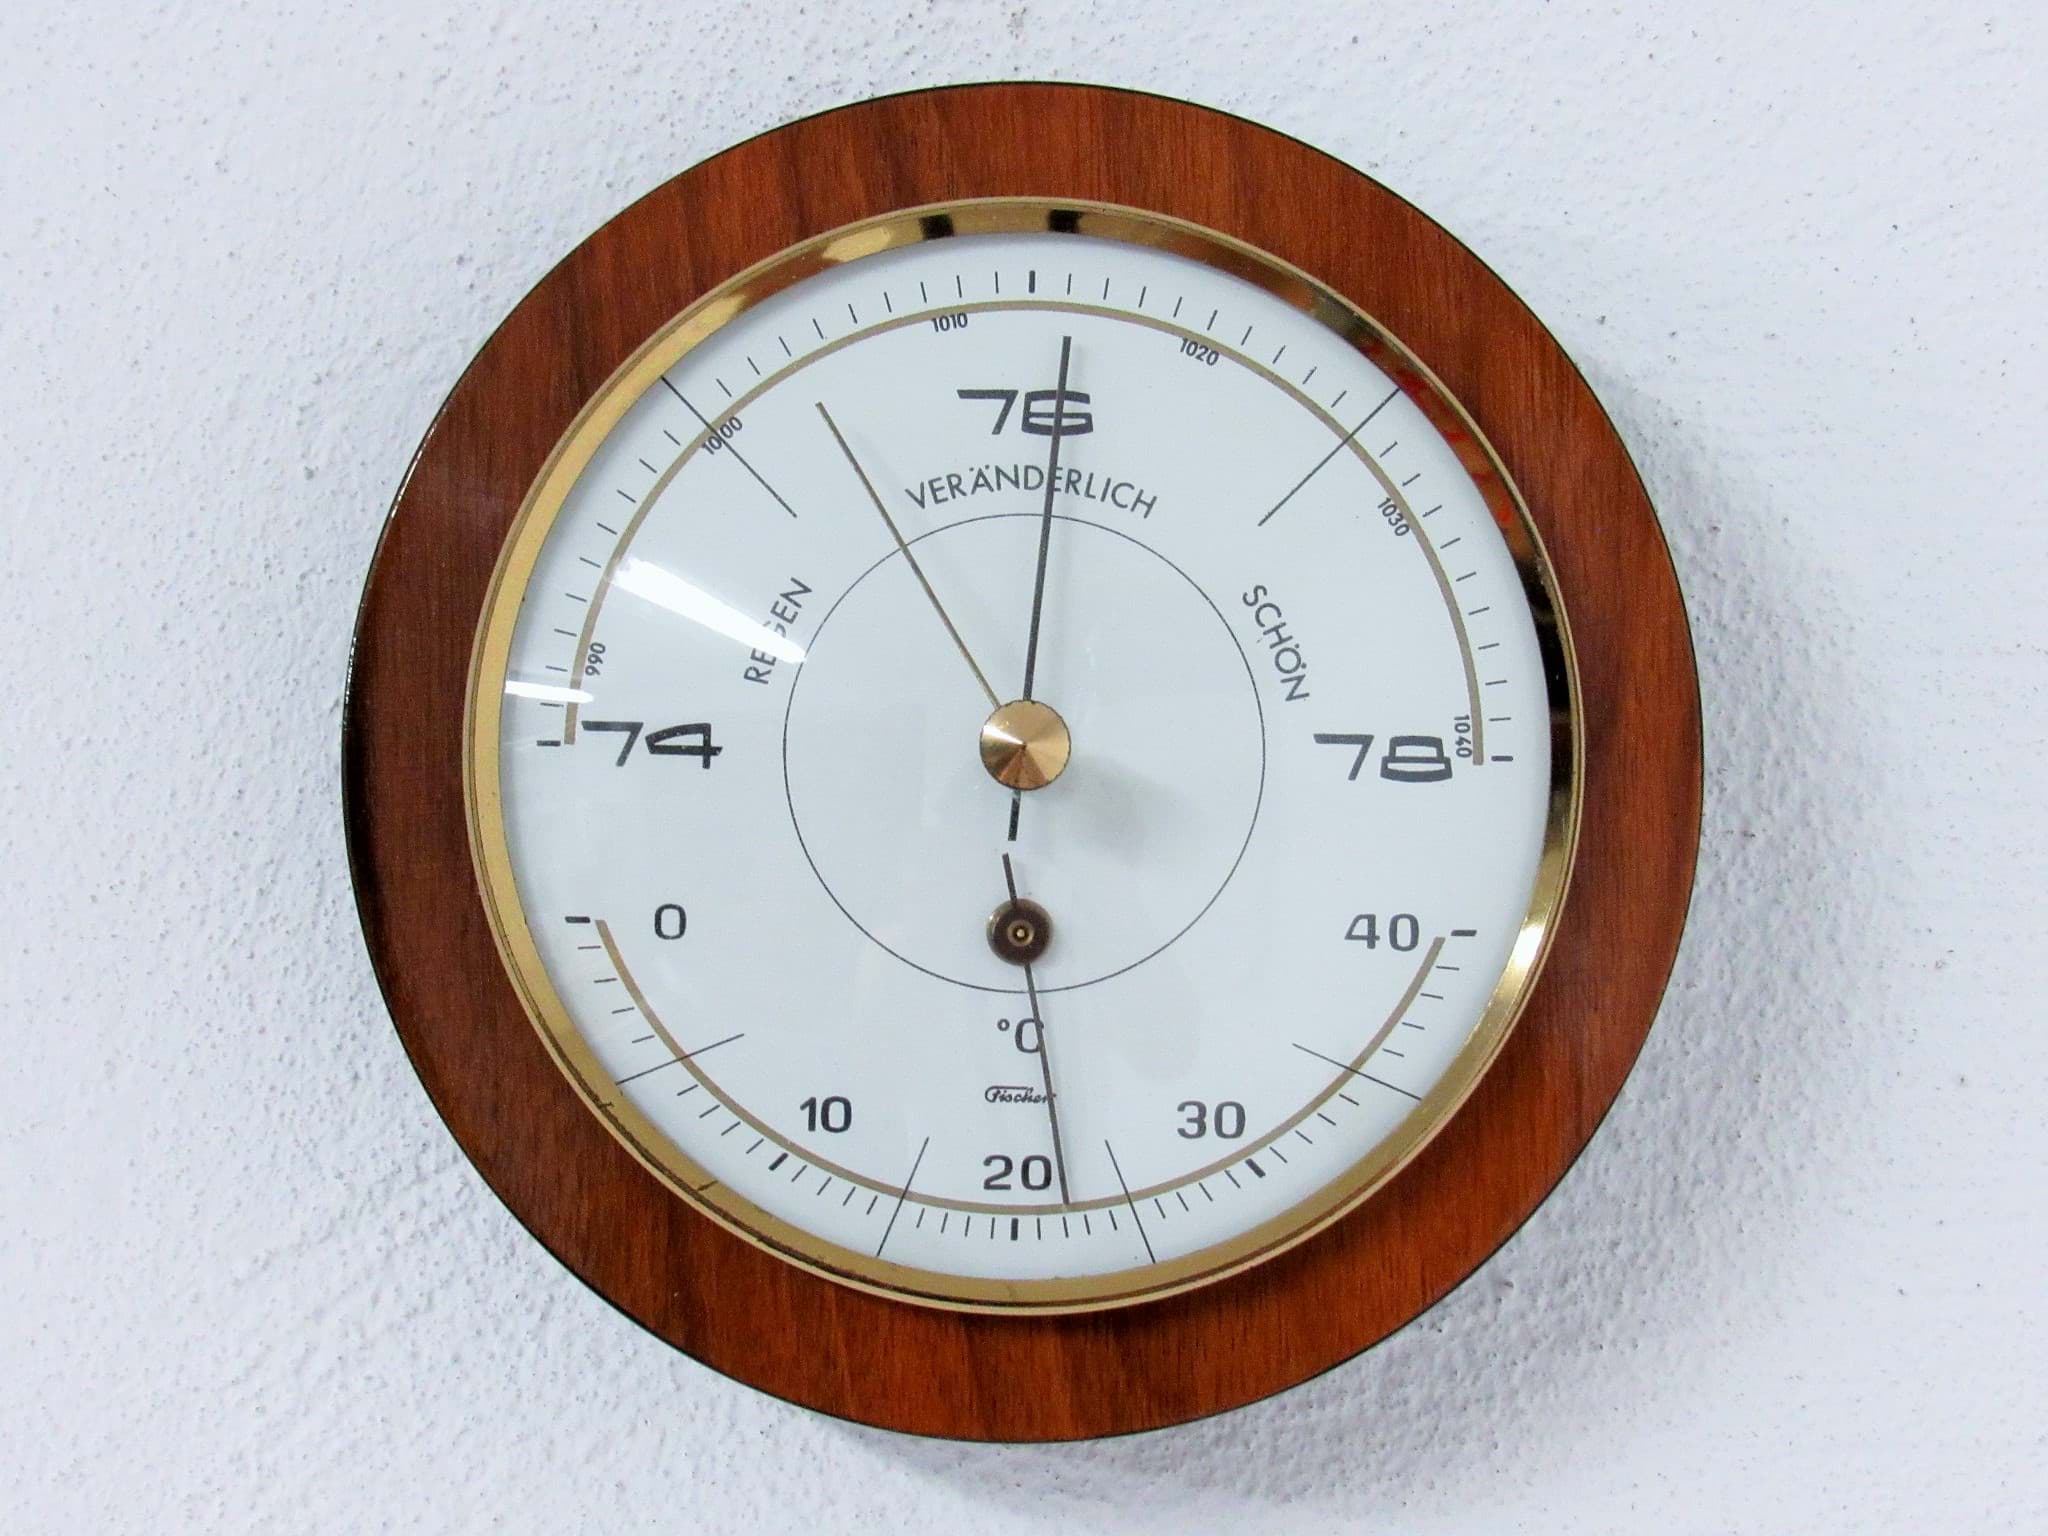 Bild av Runde Wetterstation mit Barometer & Thermometer um 1960/70, wohl Palisander Holz, Hersteller Fischer
